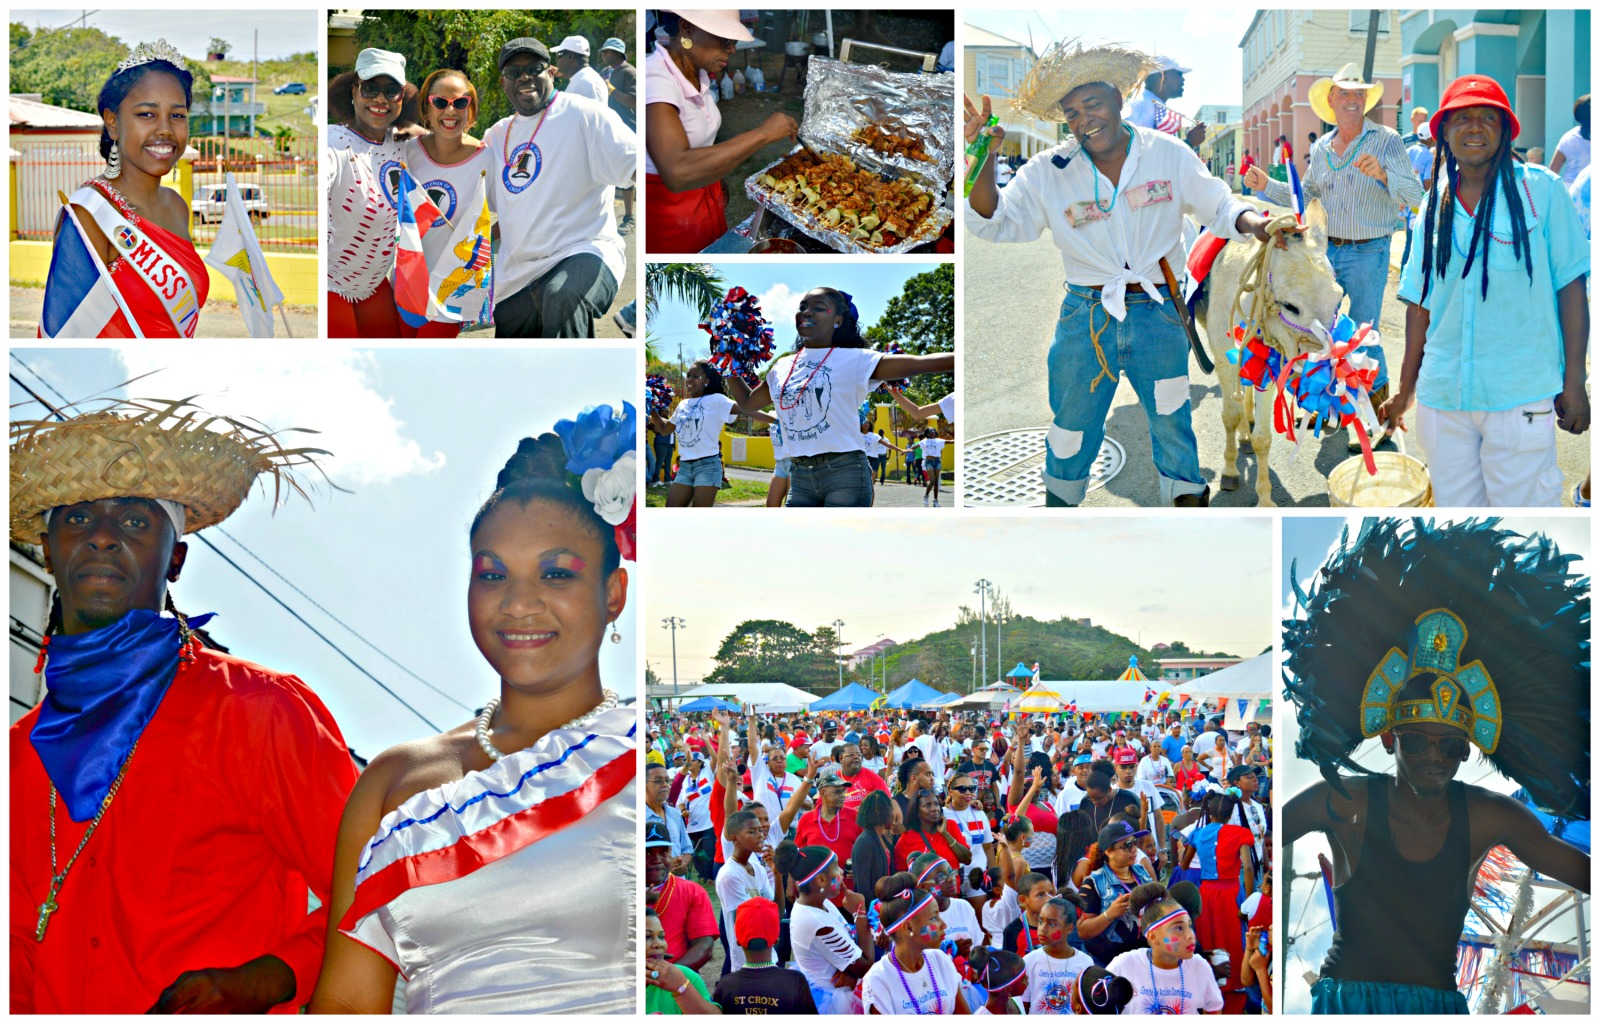 Fiesta De Pueblo, Desfile del Día de la Independencia de República Dominicana regresa el domingo de St. Croix